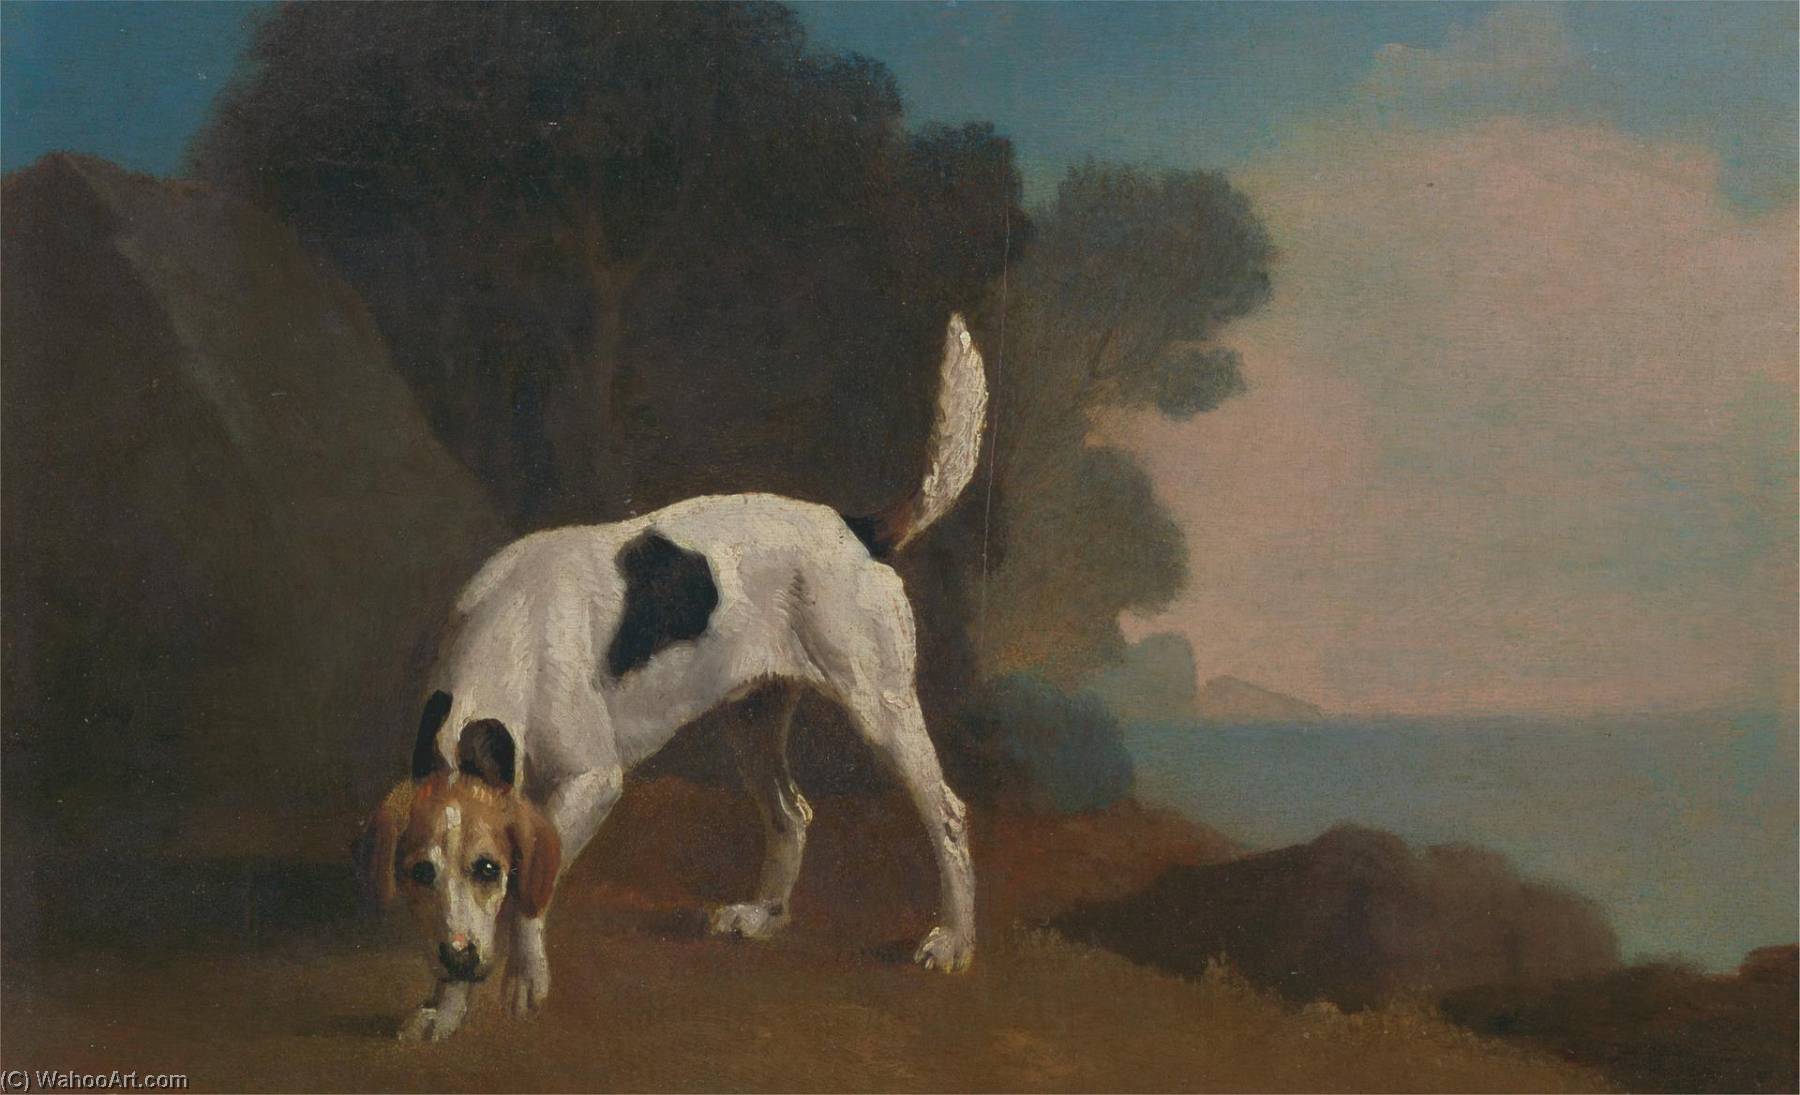 WikiOO.org - Εγκυκλοπαίδεια Καλών Τεχνών - Ζωγραφική, έργα τέχνης George Stubbs - Foxhound